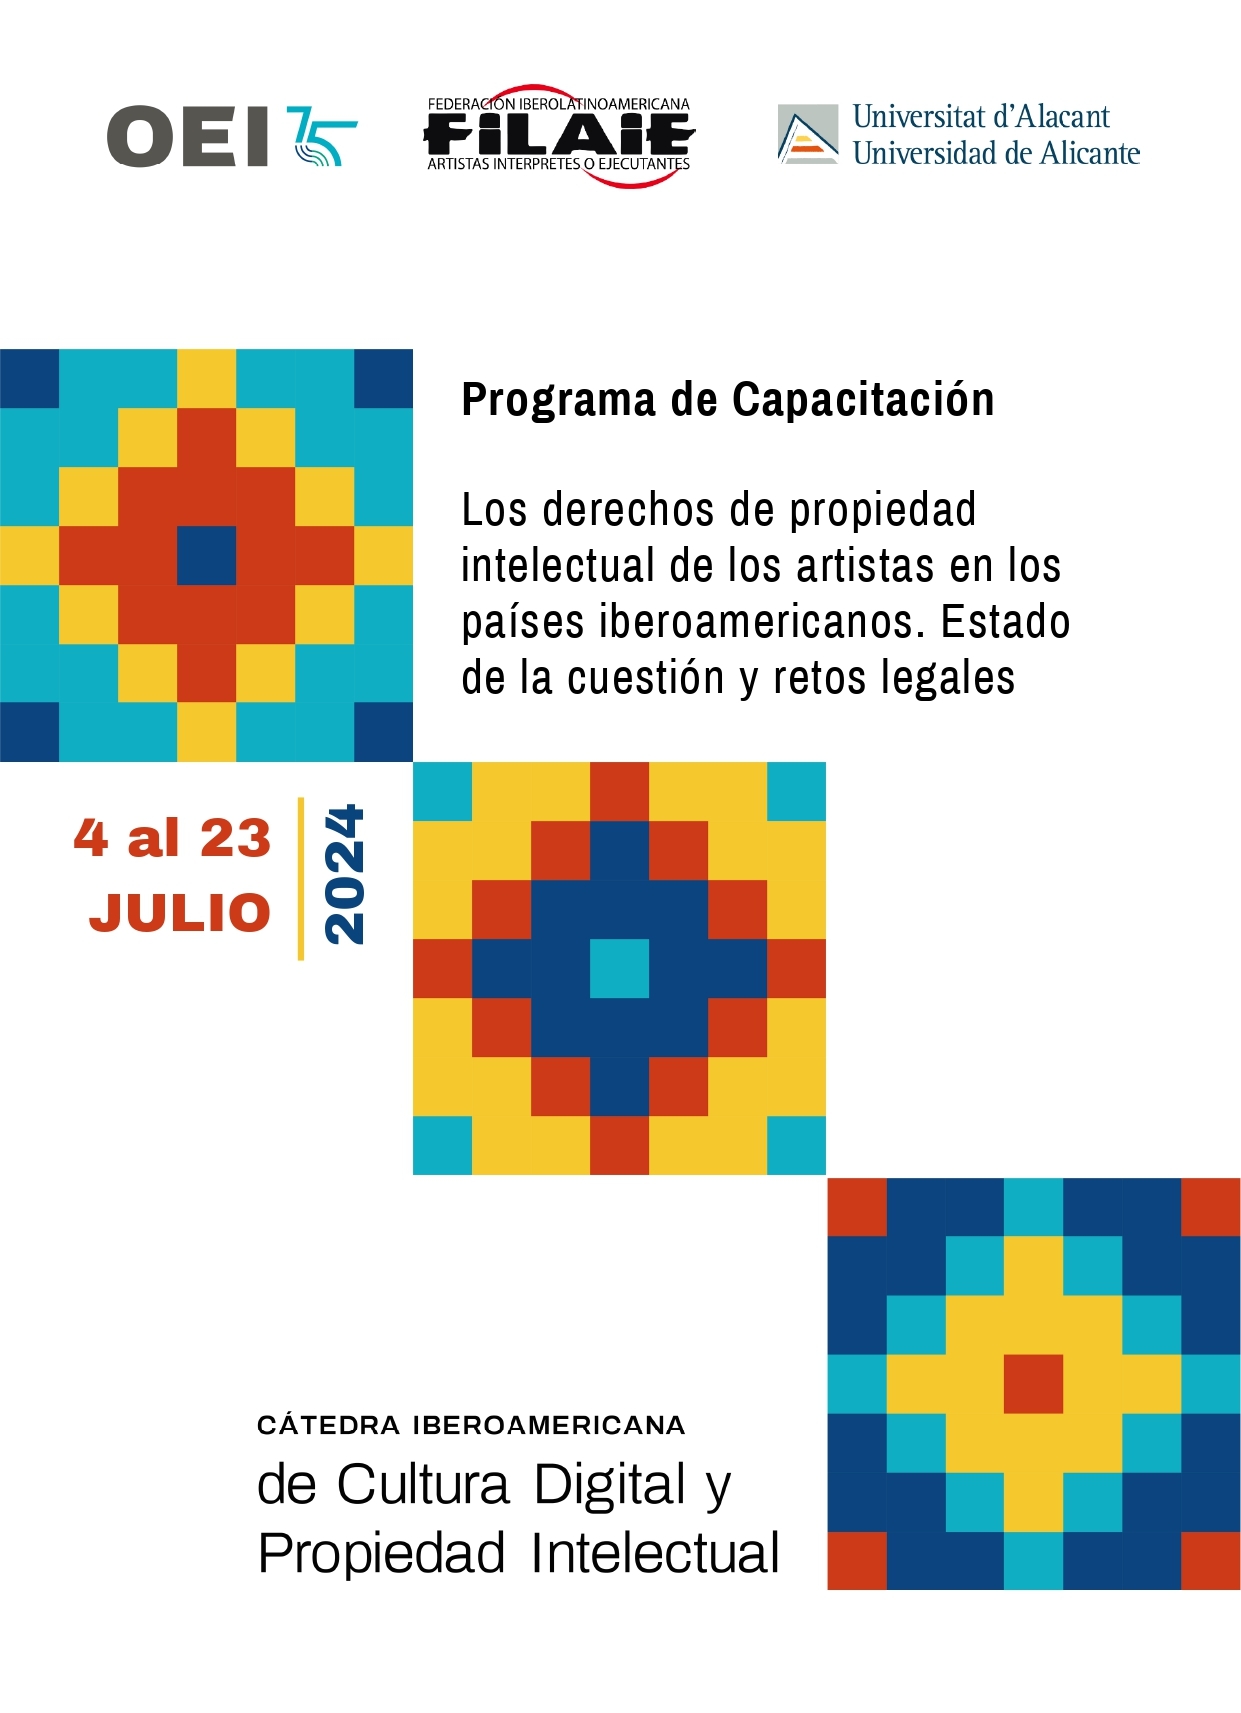 Los derechos de propiedad intelectual de los artistas en los países iberoamericanos: Estado de la cuestión y retos legales (Sesión 3)